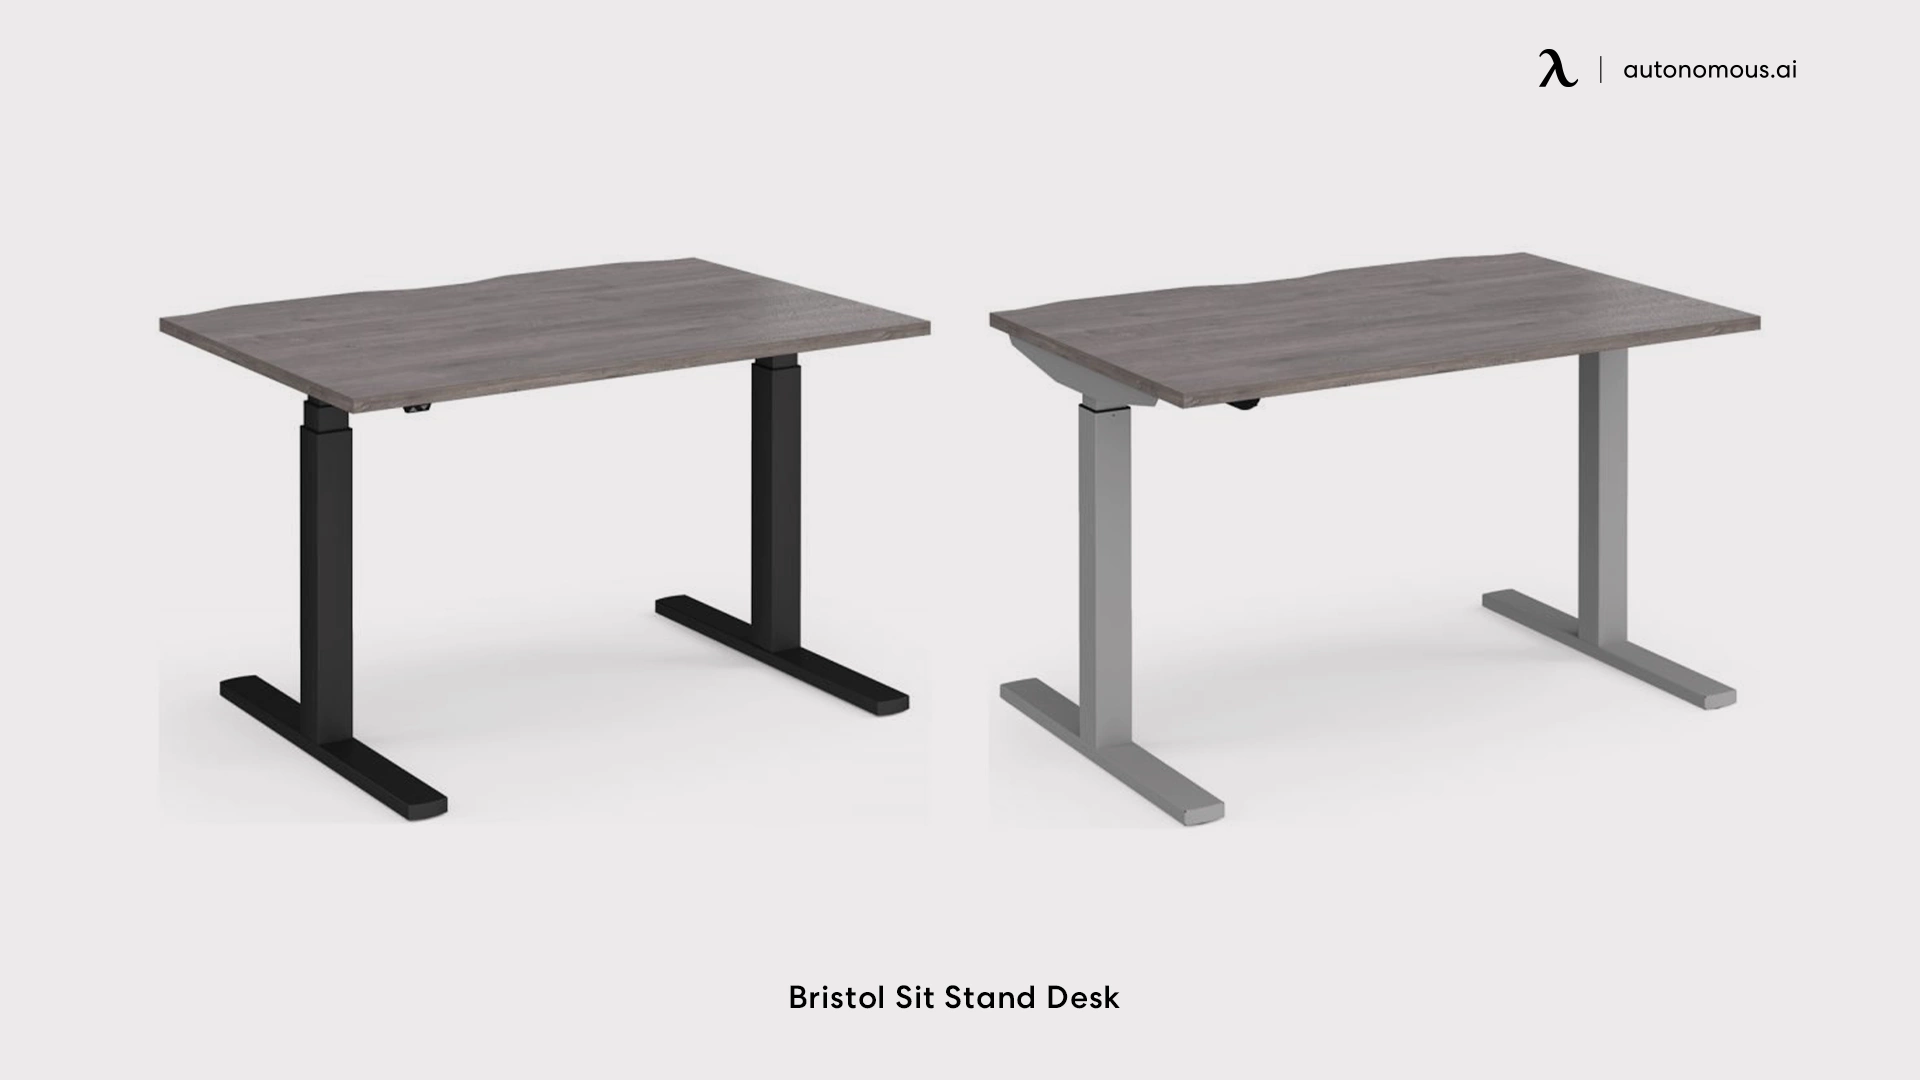 Bristol Sit Stand Desk